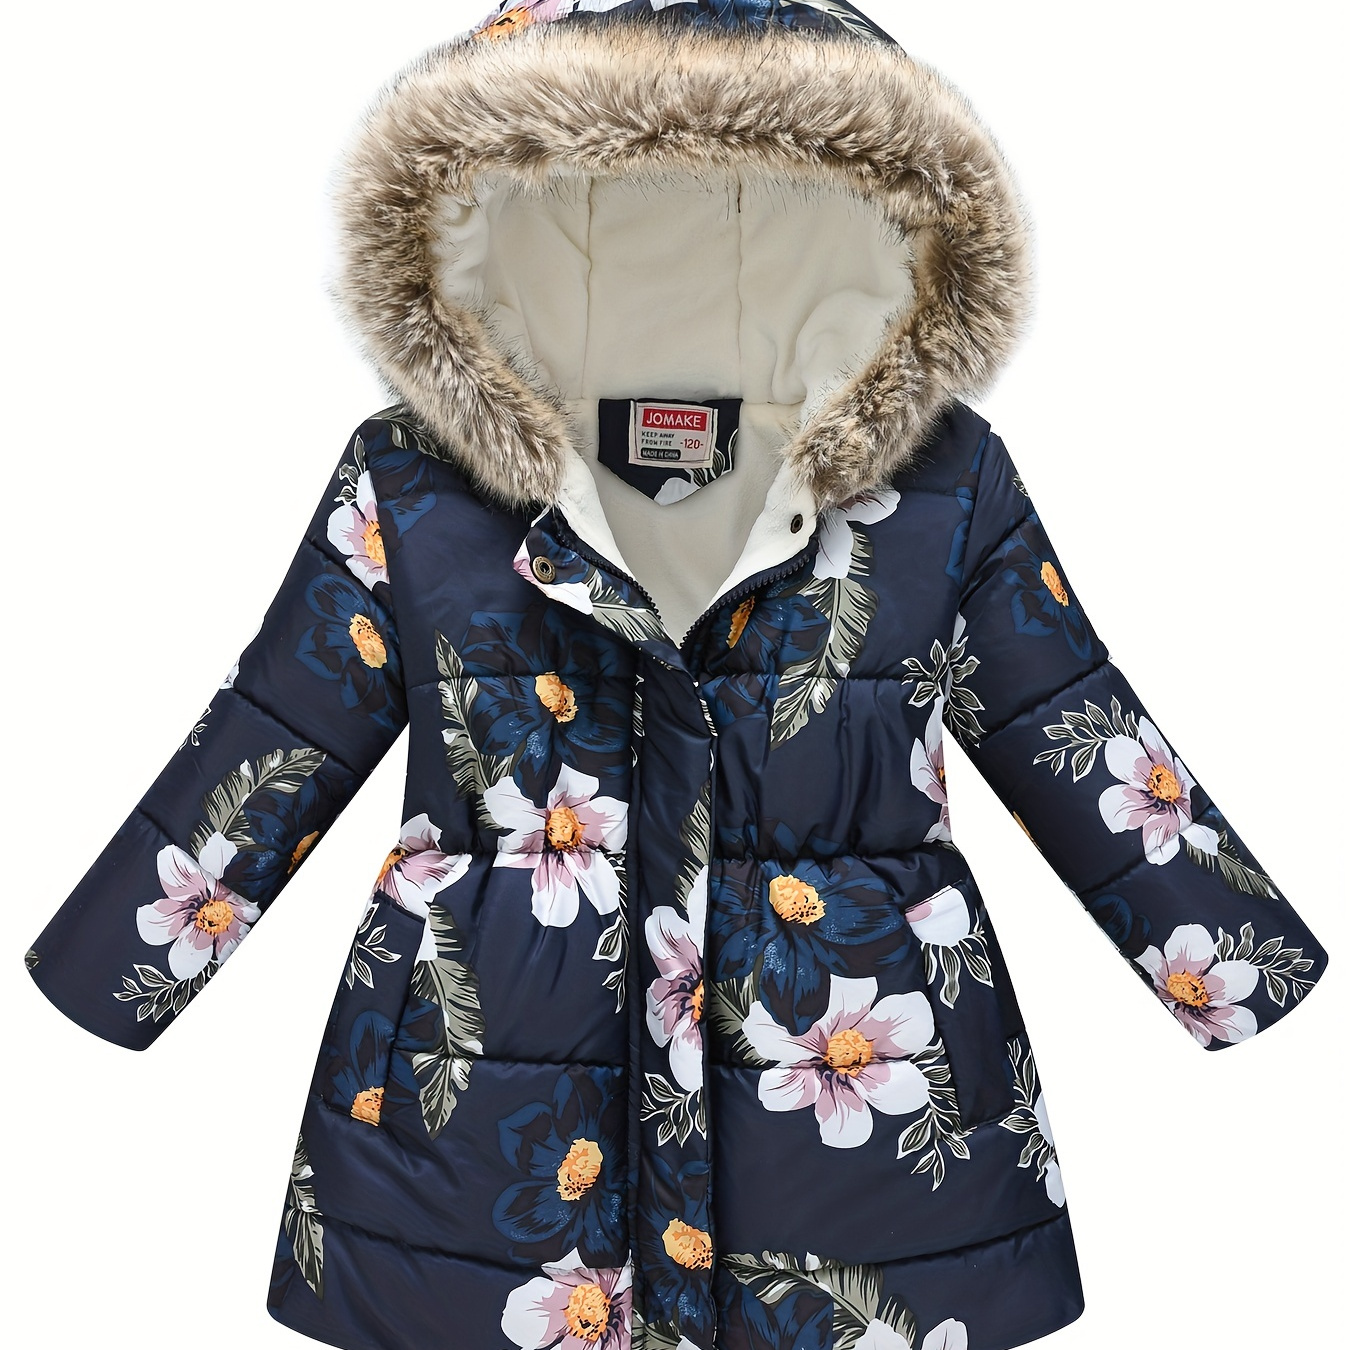 

Children's Girls Puffer Coat Flowers Print Zipper Hooded Fleece Warm Jacket Winter Kids Clothes